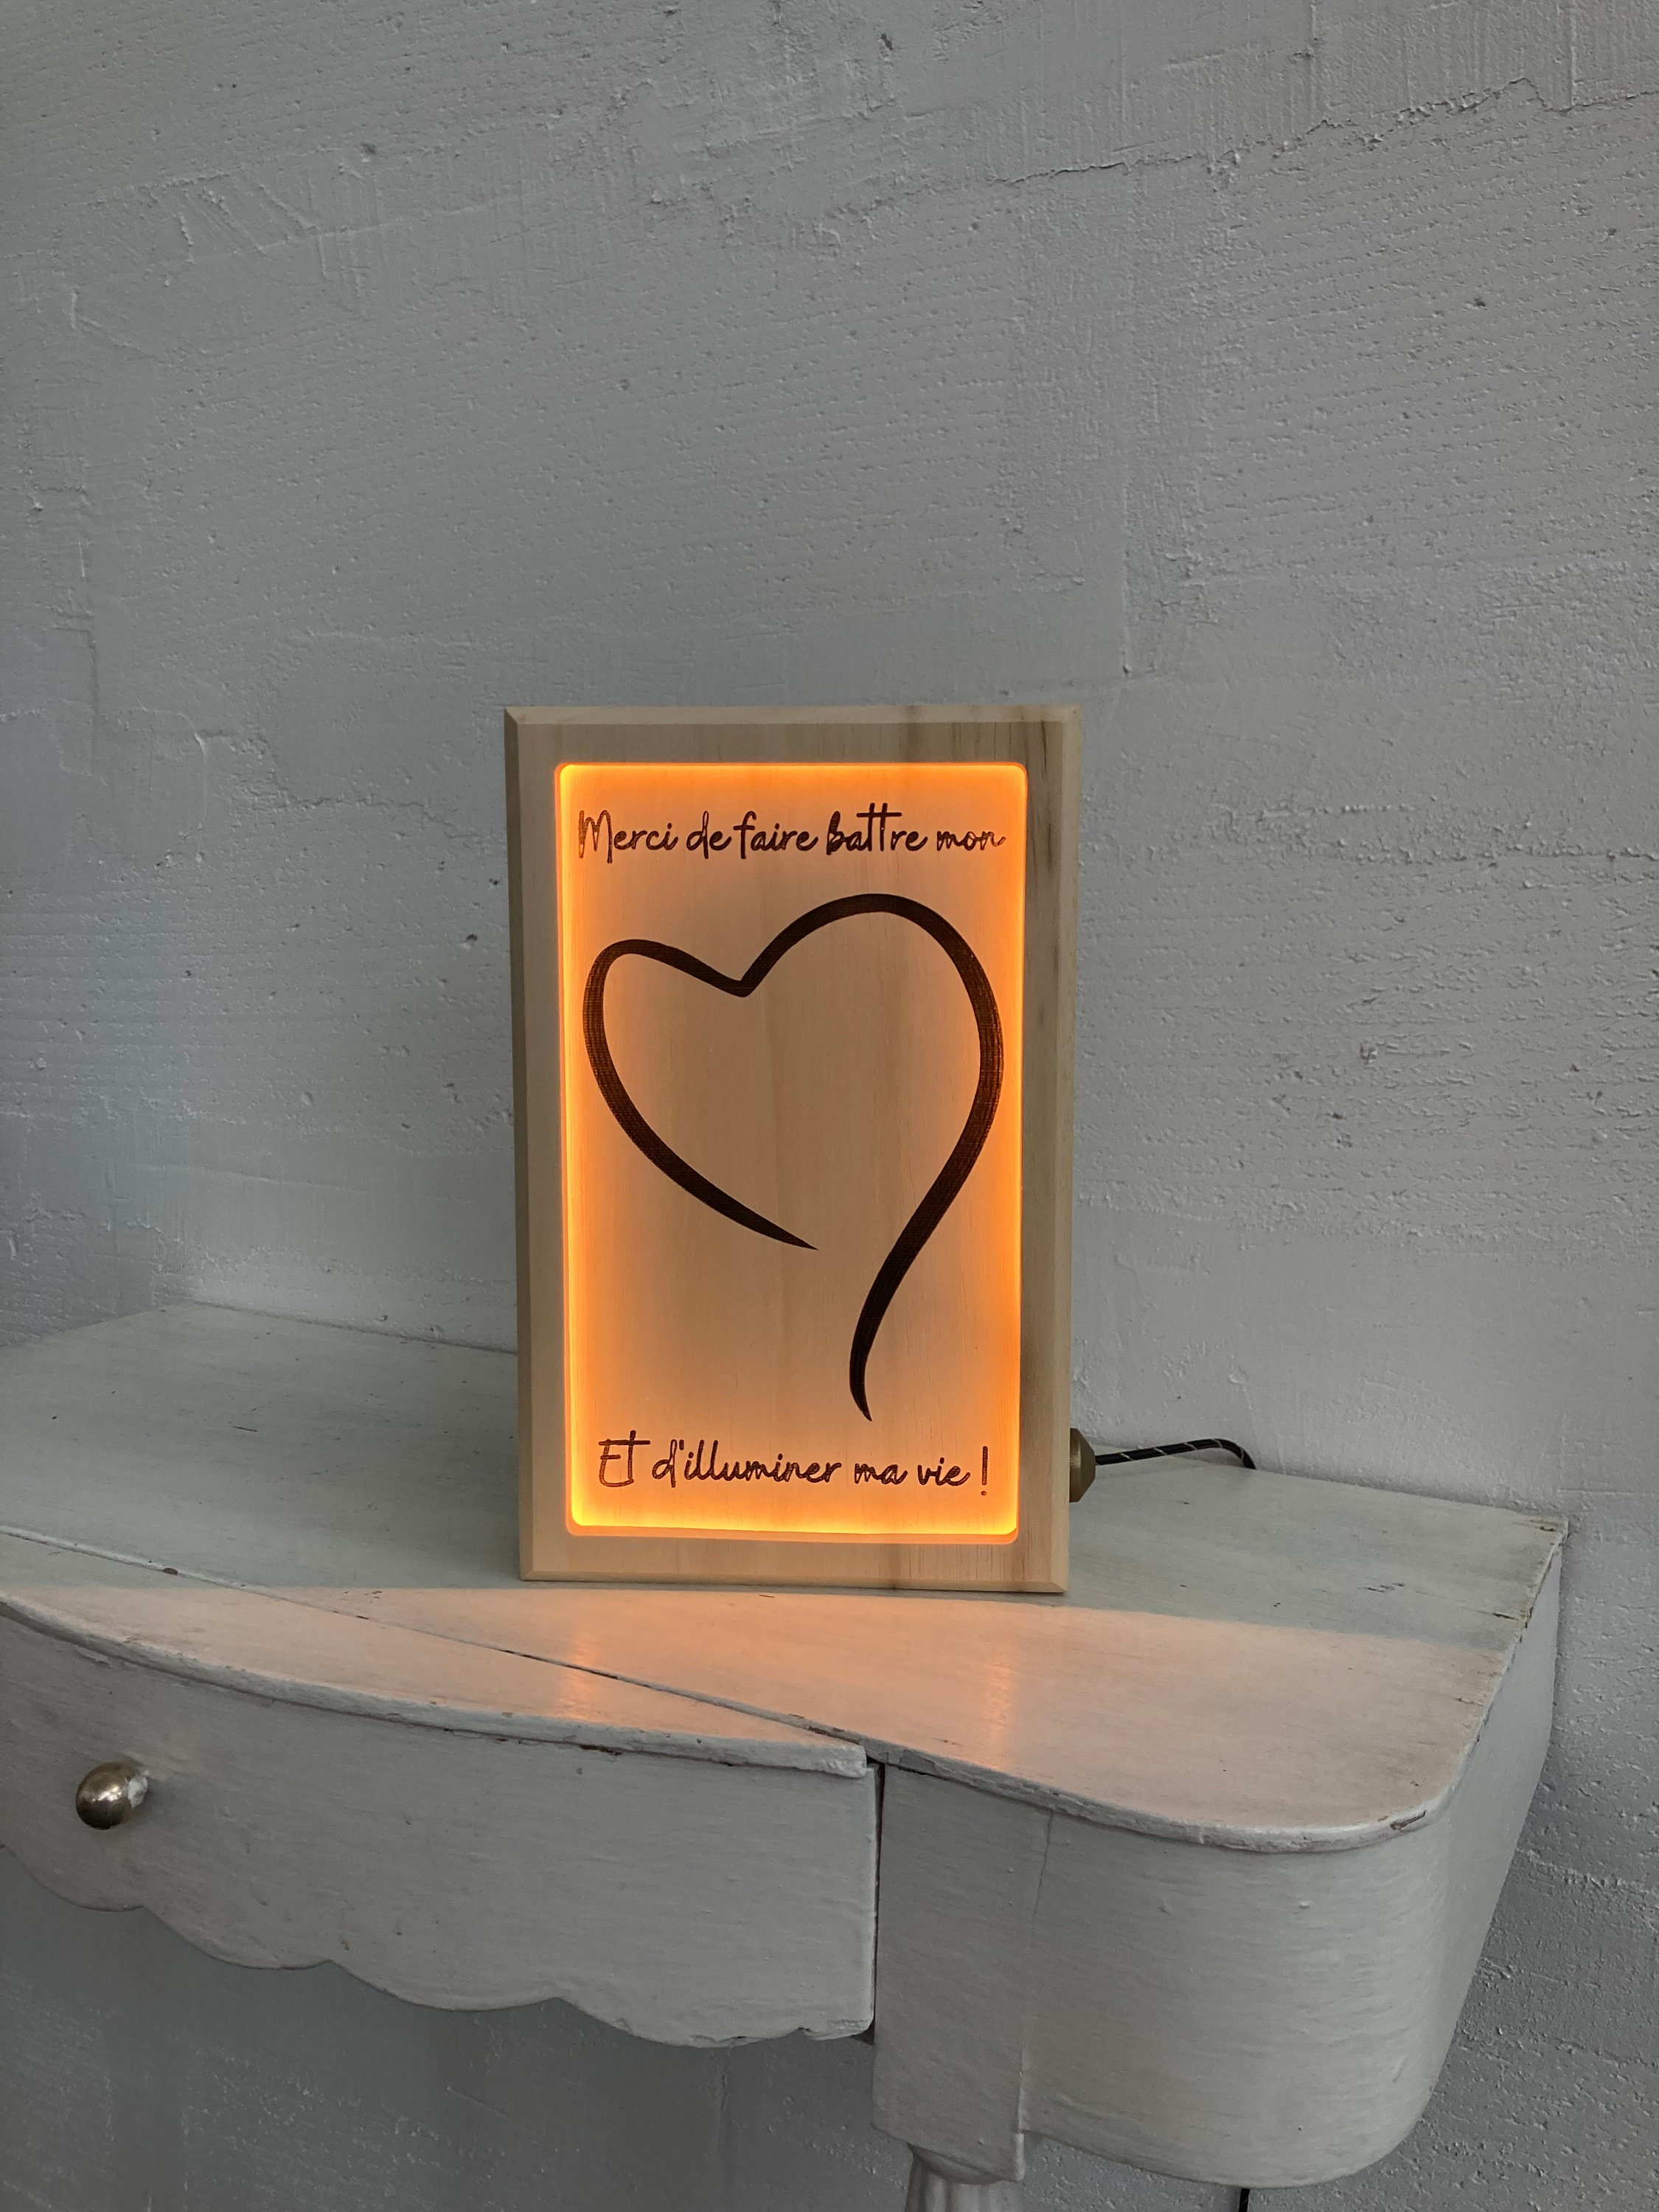 Idée cadeau Saint Valentin : Lampe personnalisée LED avec Cœur